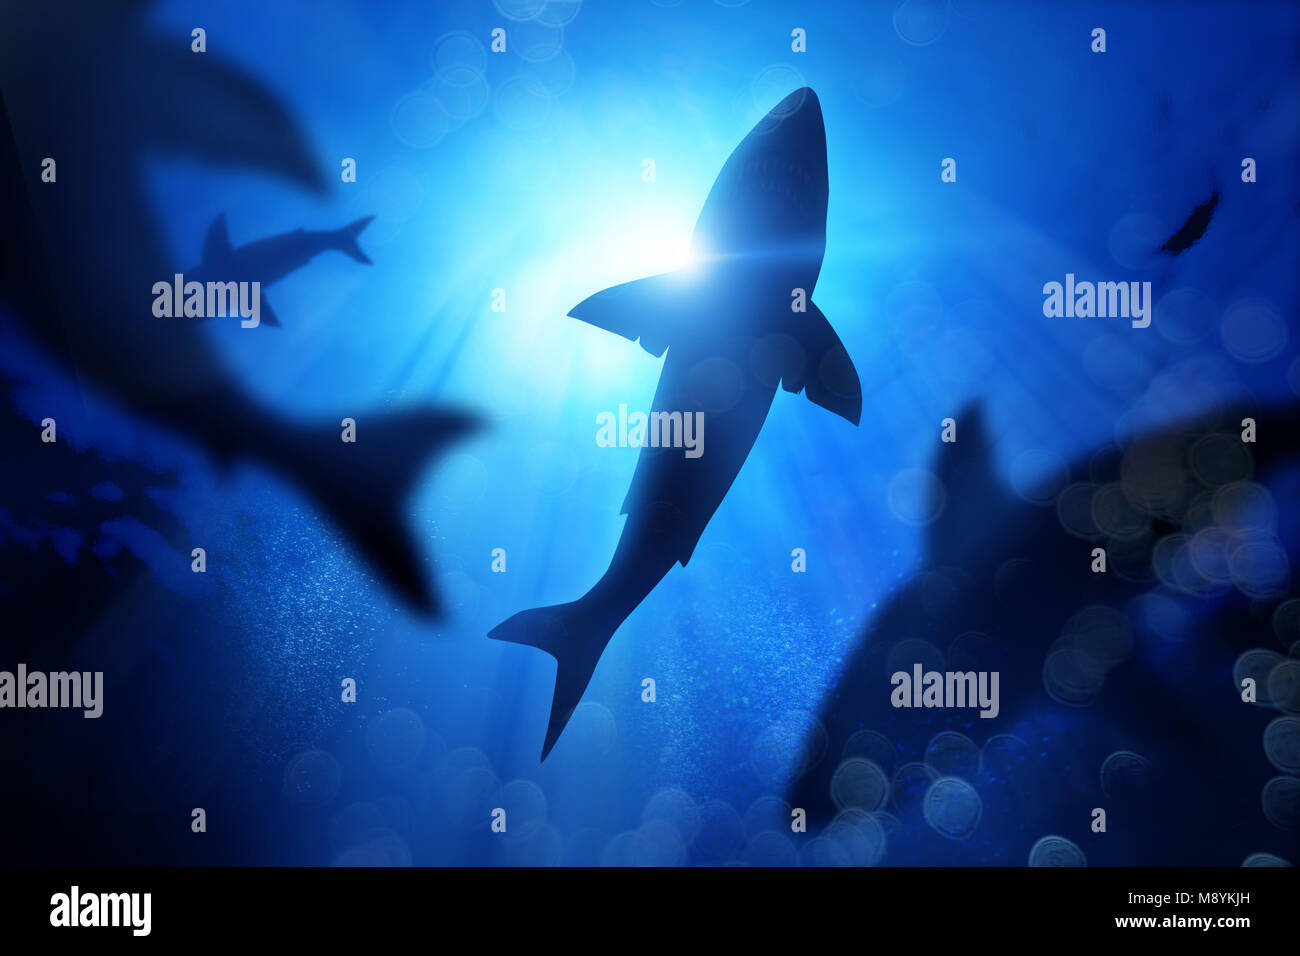 Une école des requins dans le bleu profond de la mer. Illustration technique mixte Banque D'Images